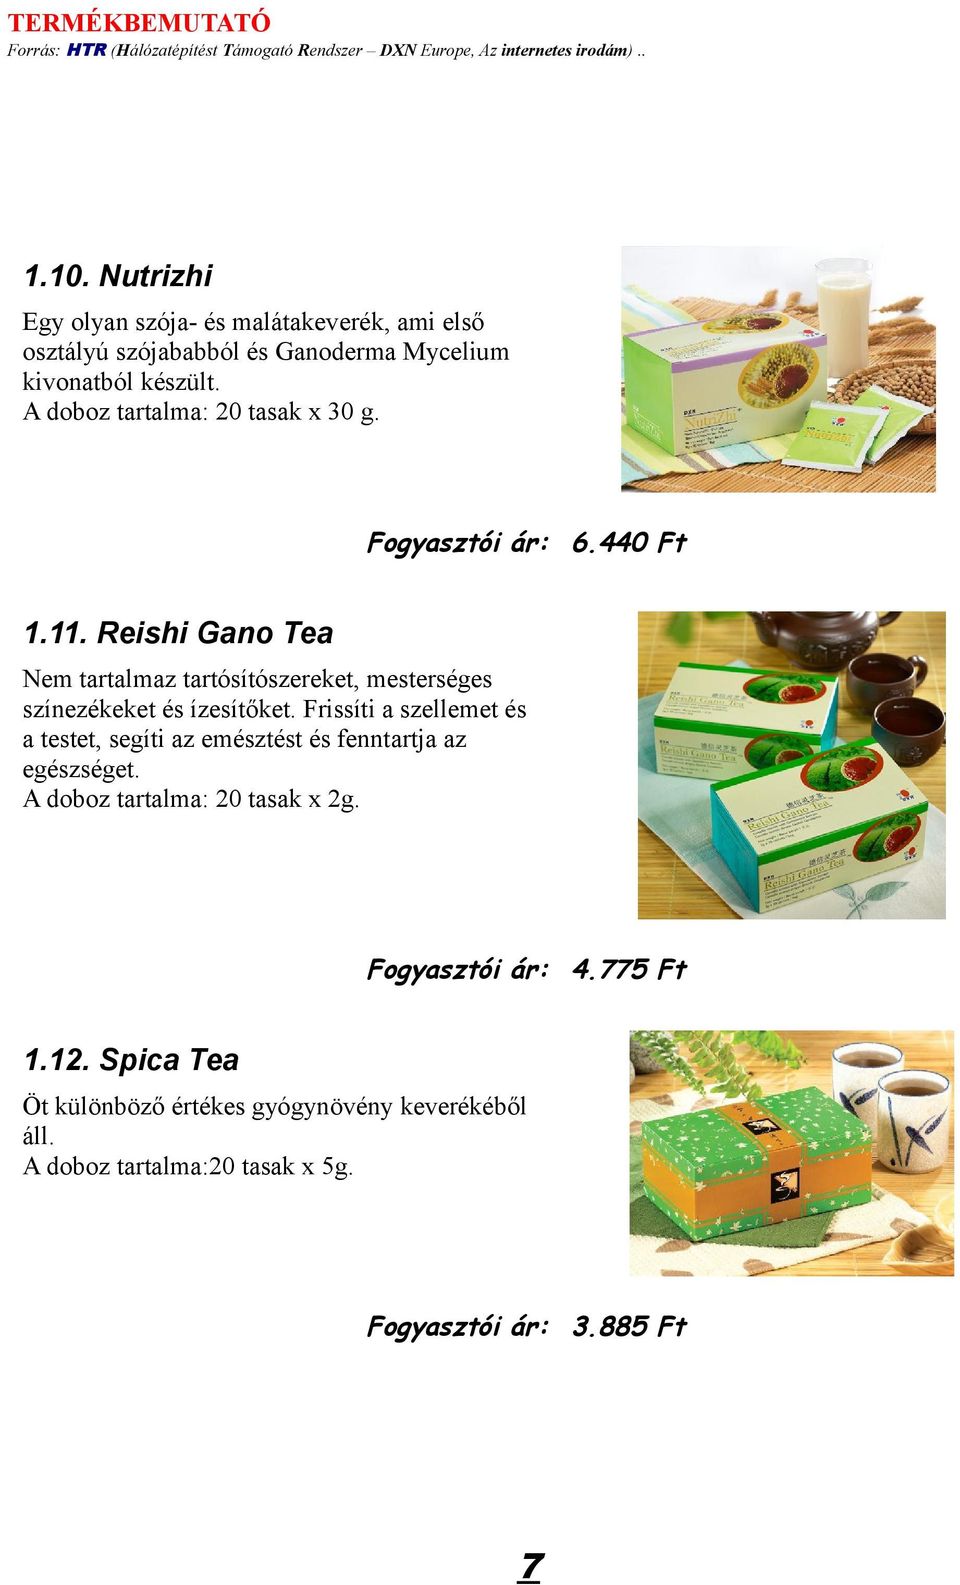 Reishi Gano Tea Nem tartalmaz tartósítószereket, mesterséges színezékeket és ízesítőket.